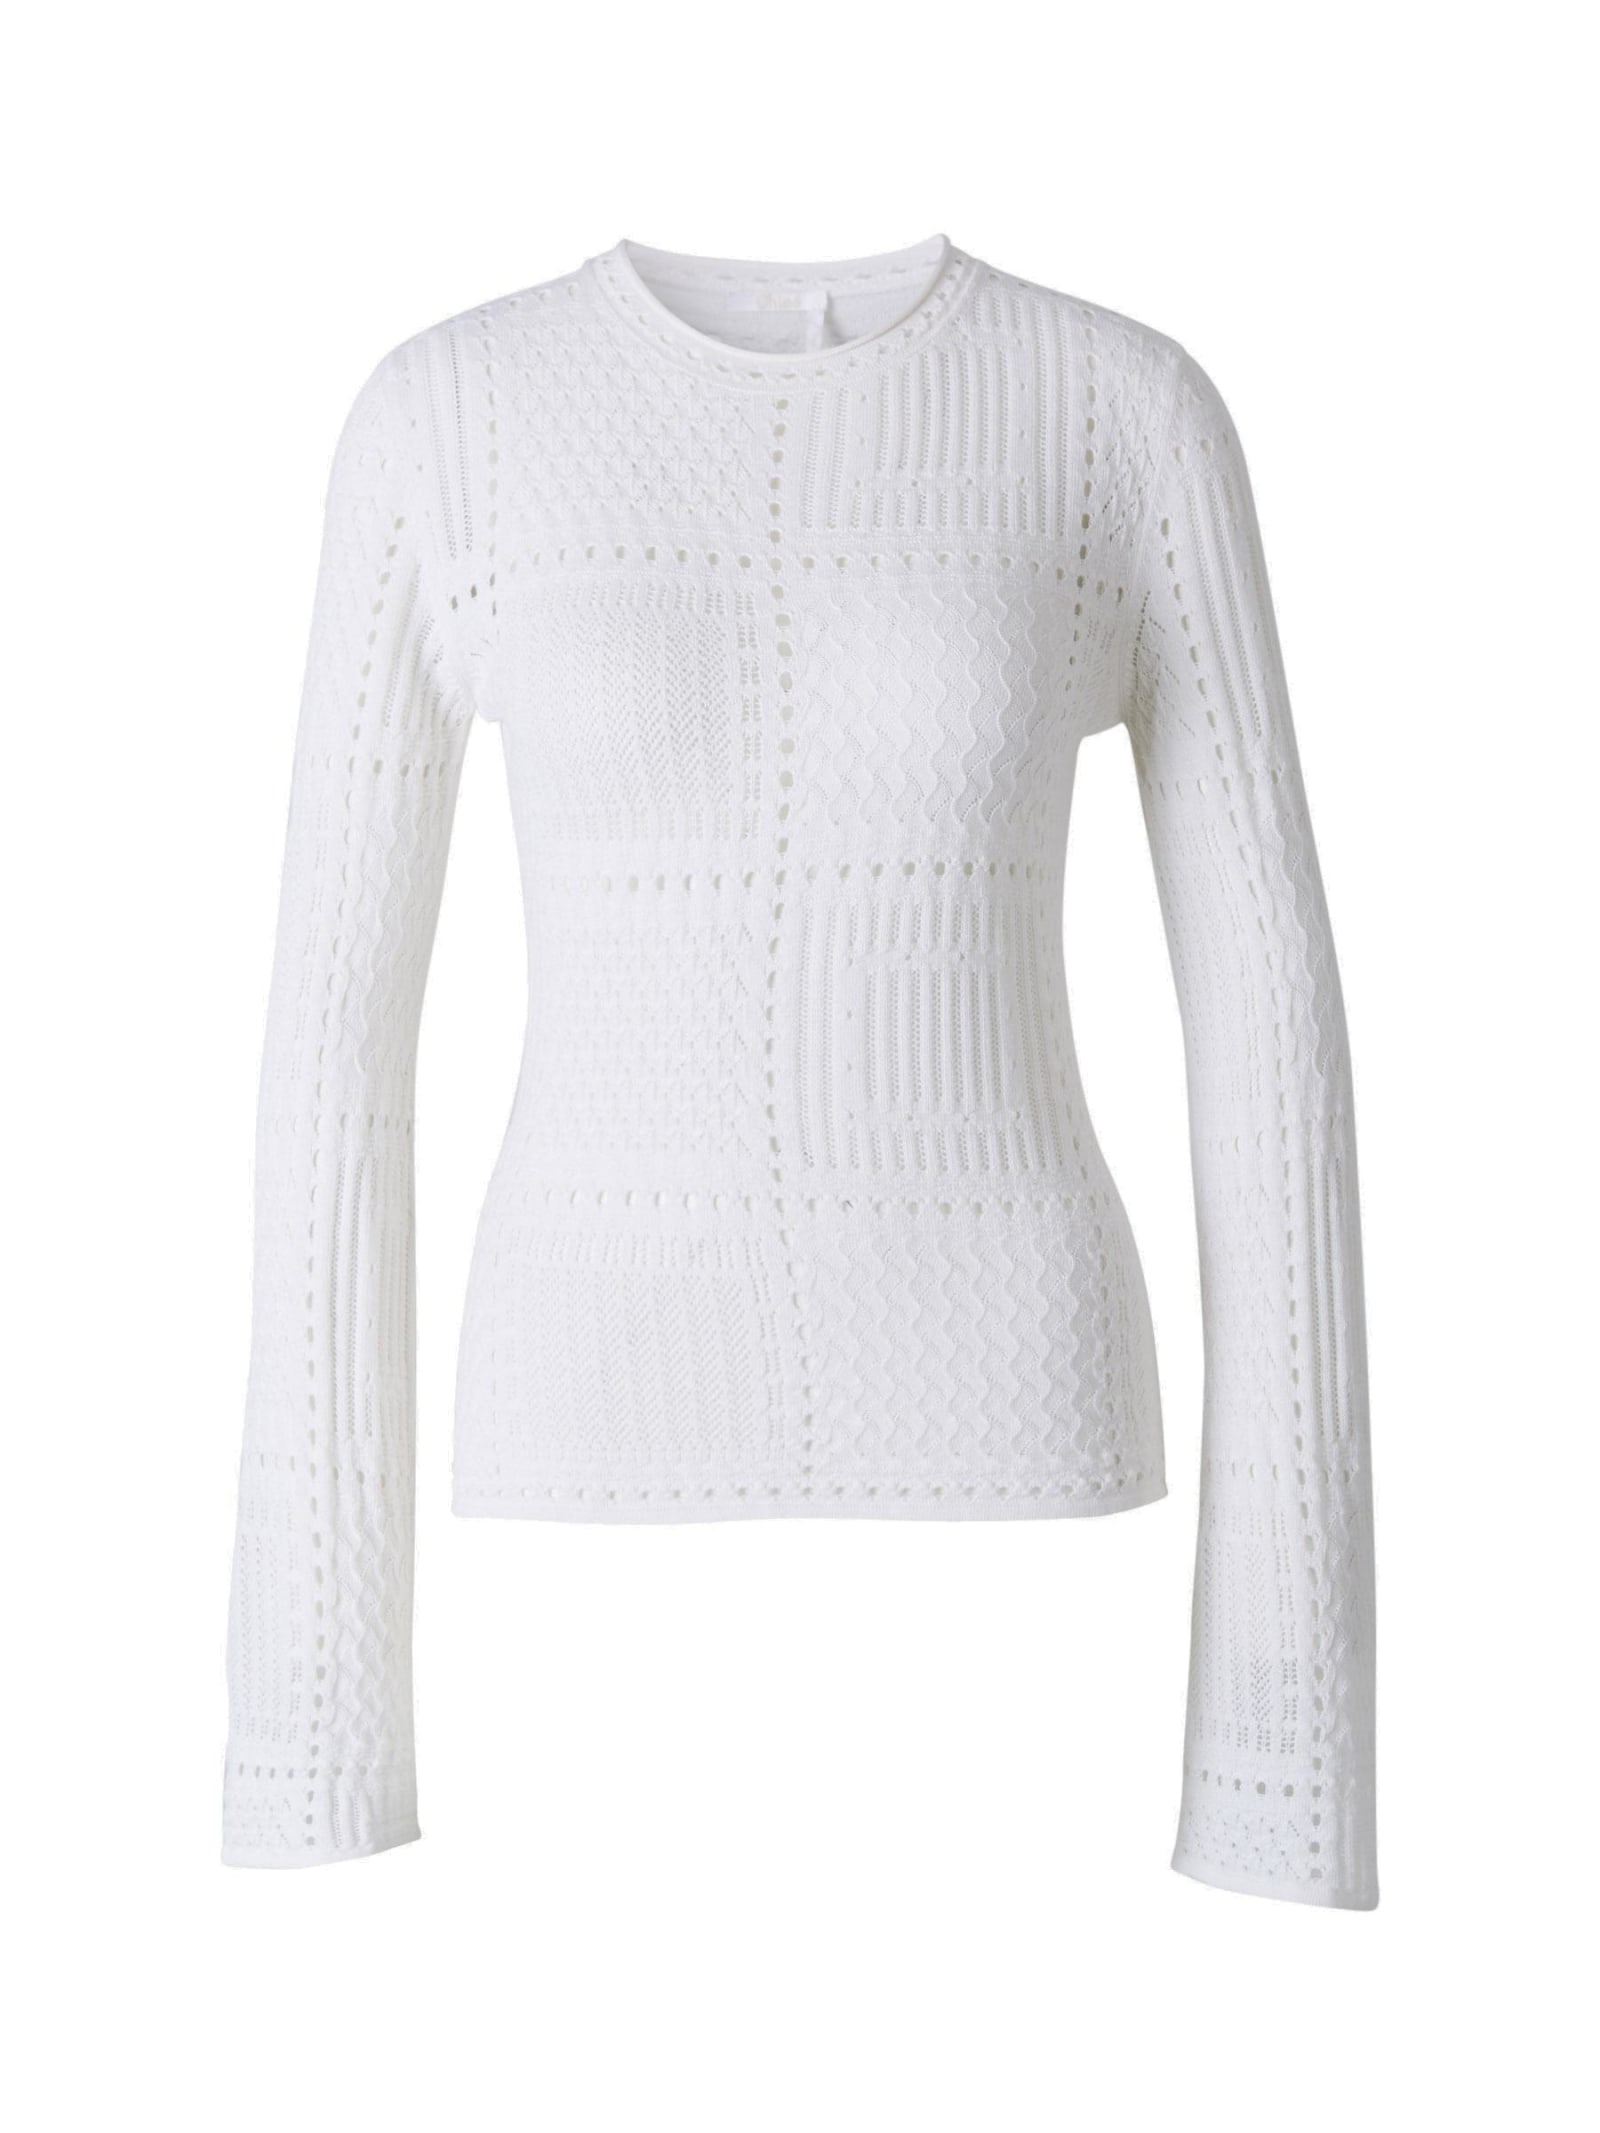 Chloé Semi-sheer Long Sleeved Crewneck Sweater